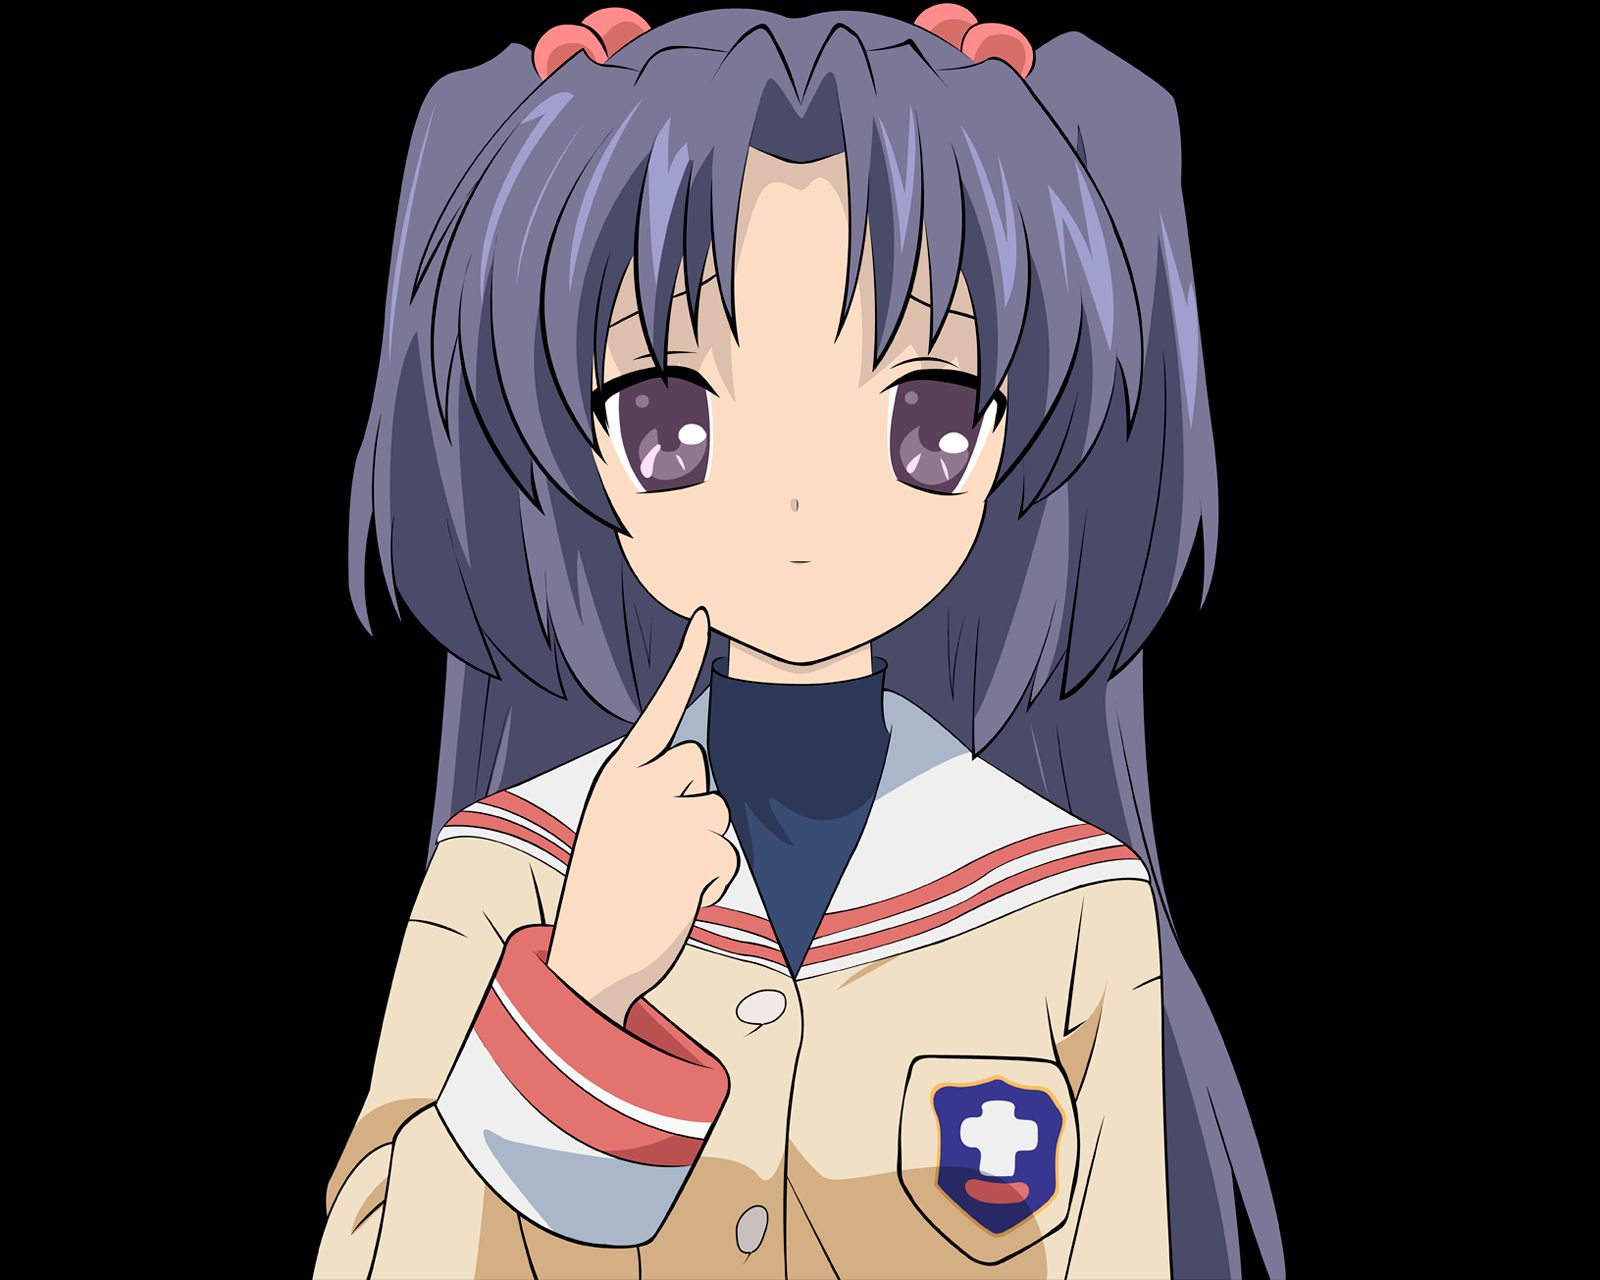 Baixe gratuitamente a imagem Anime, Clannad, Kotomi Ichinose na área de trabalho do seu PC